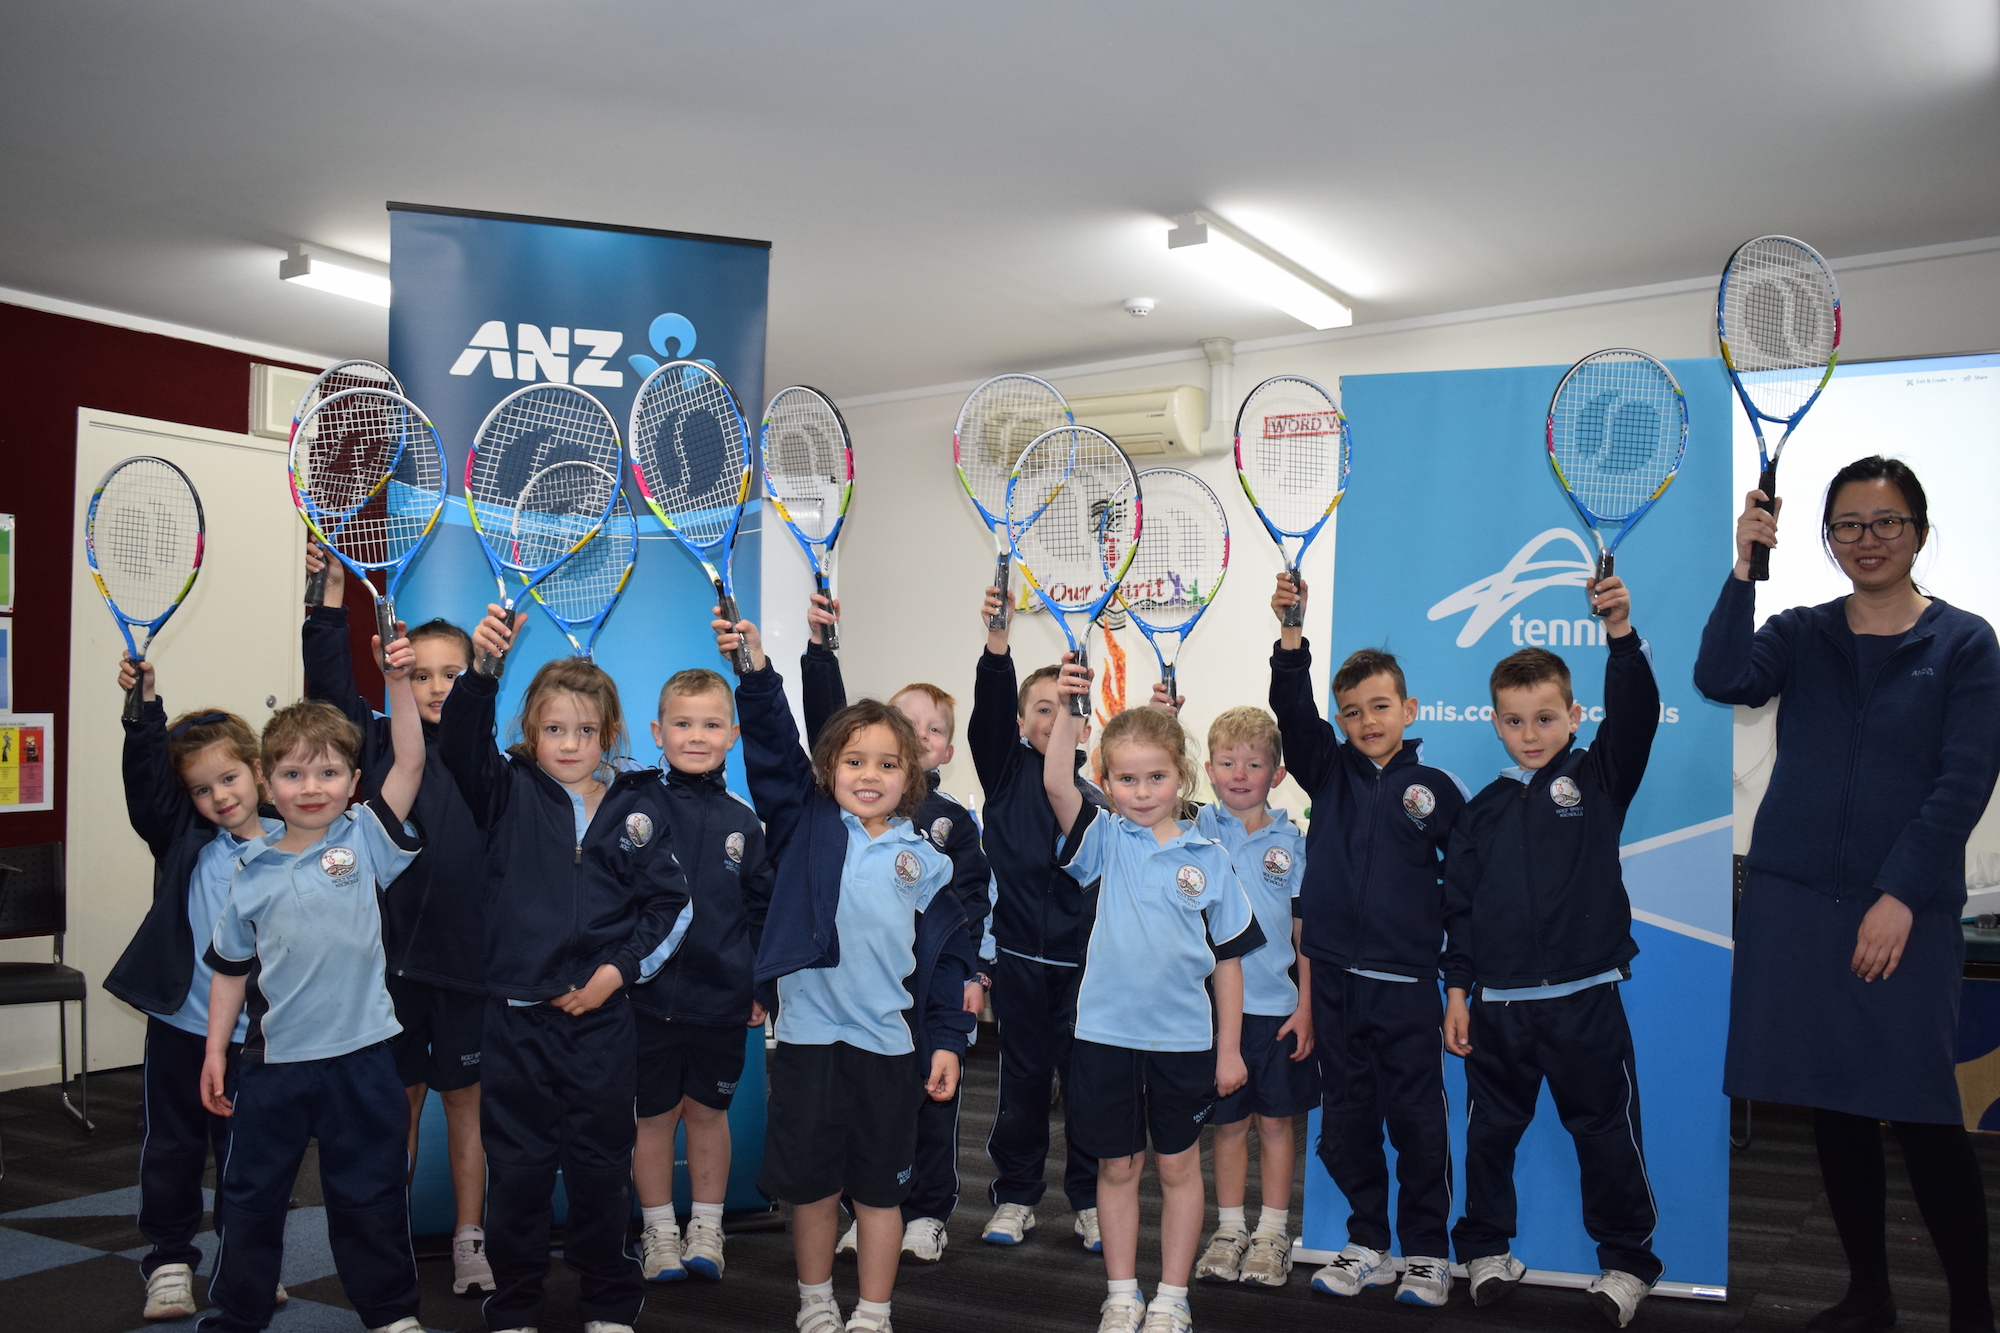 Gungahlin kids make a racquet over tennis stars